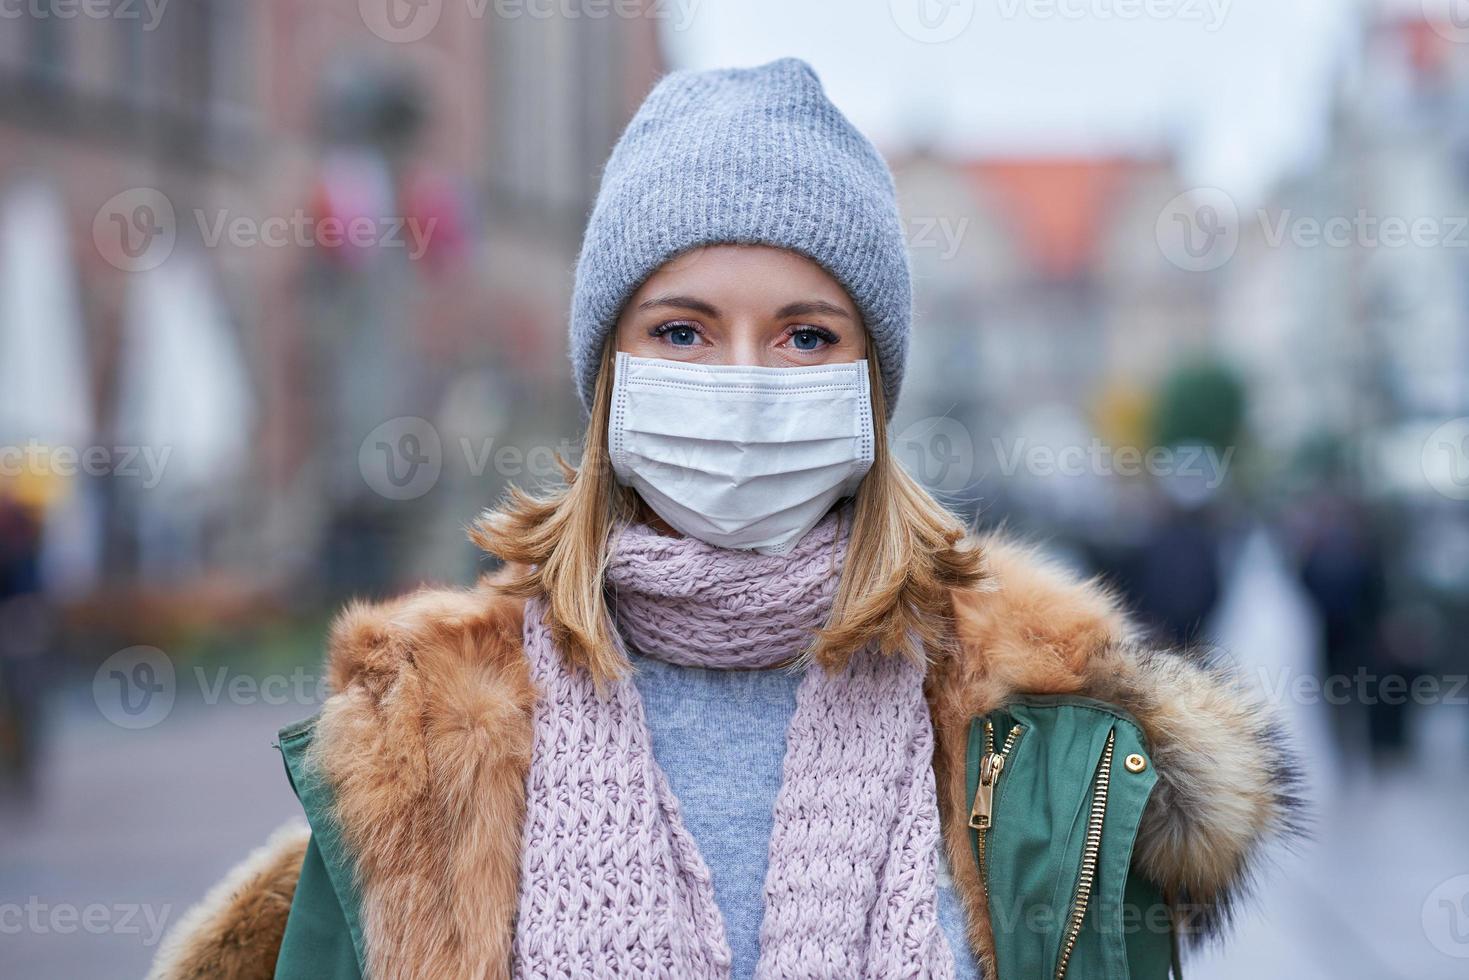 mujer con mascarilla debido a la contaminación del aire o la epidemia de virus en la ciudad foto